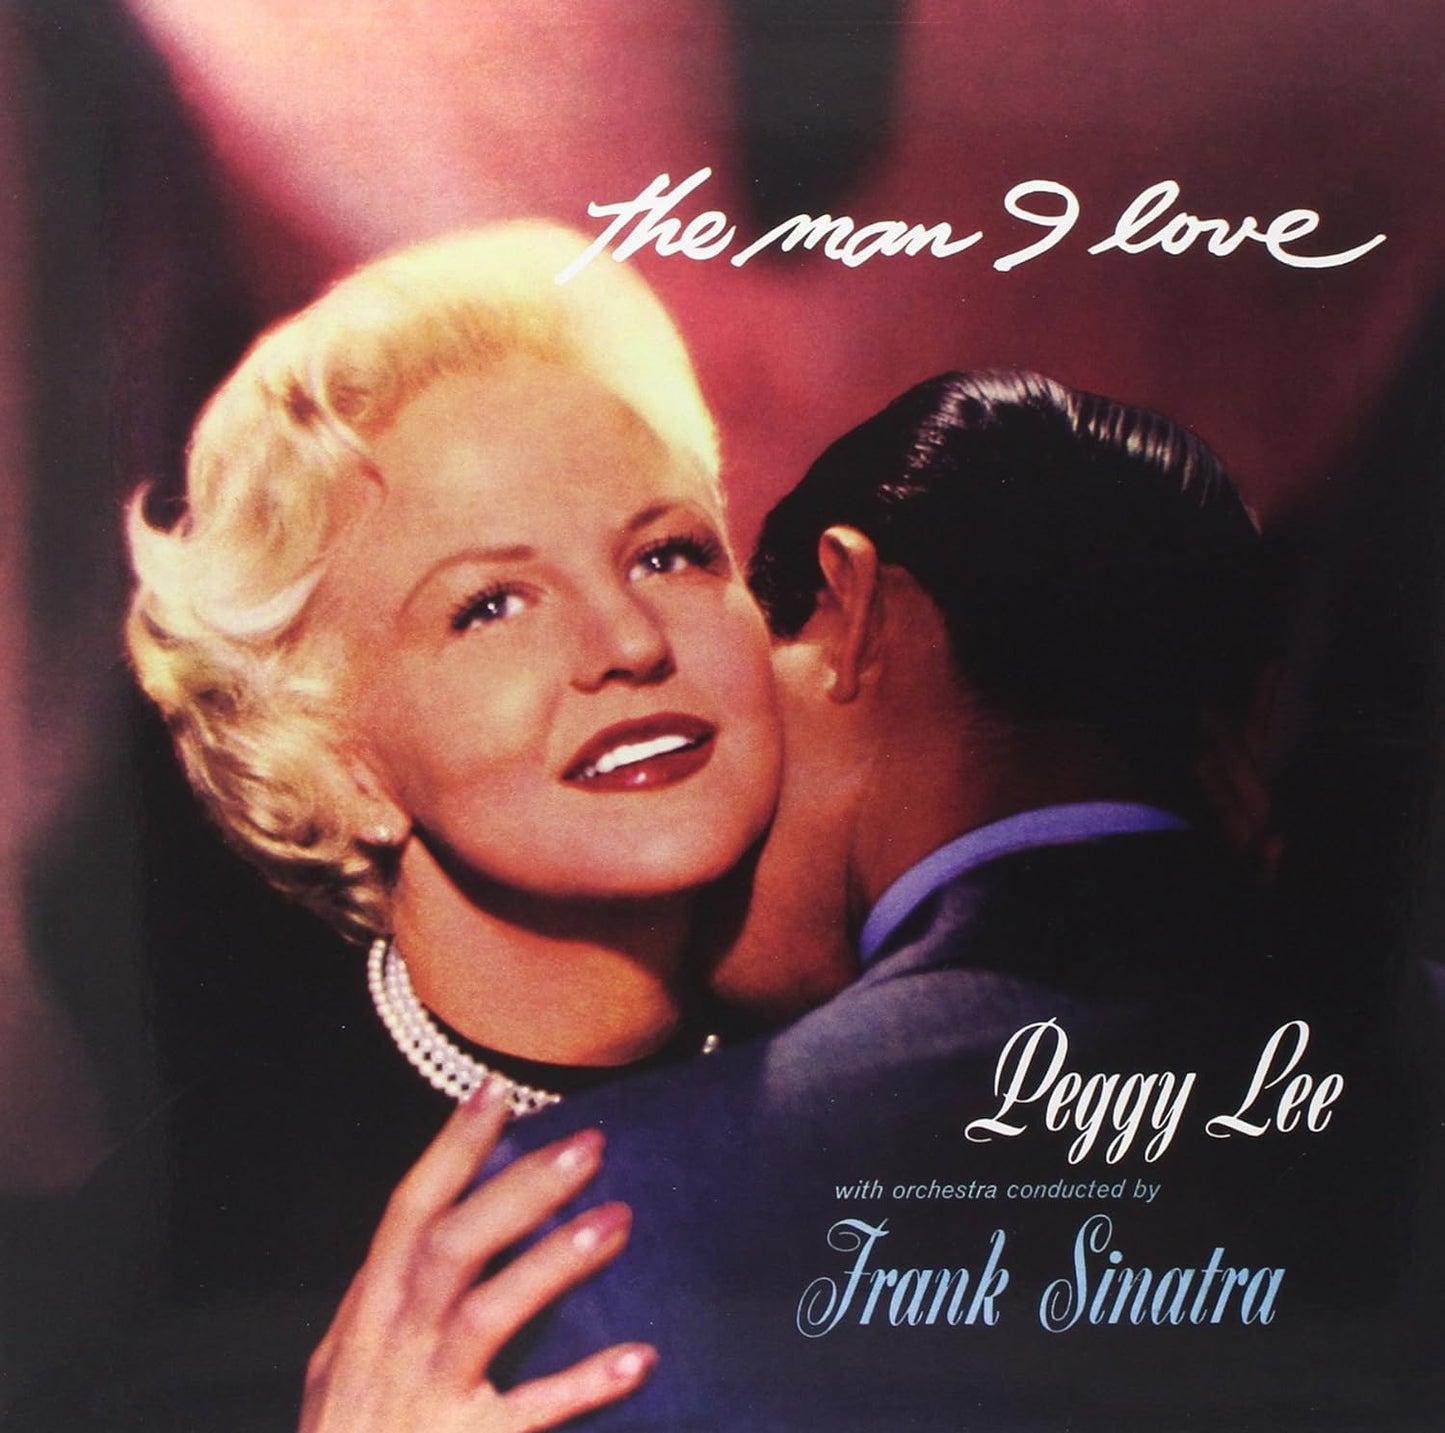 Peggy Lee - The man I love (Vinile 180gr.)